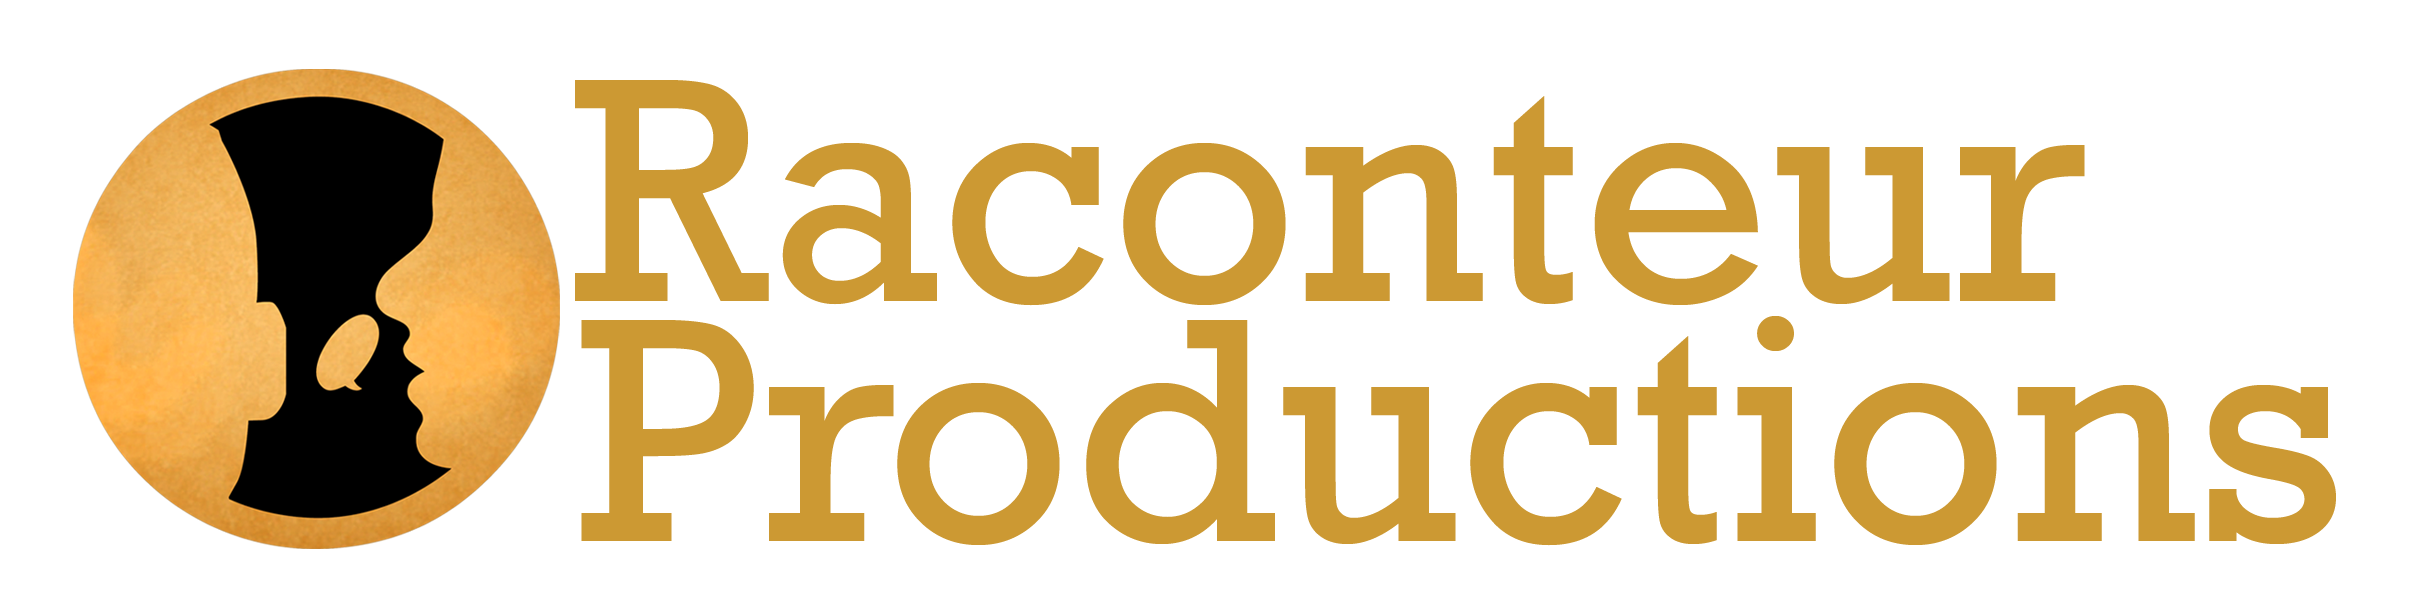 Raconteur_logo2(complete).png